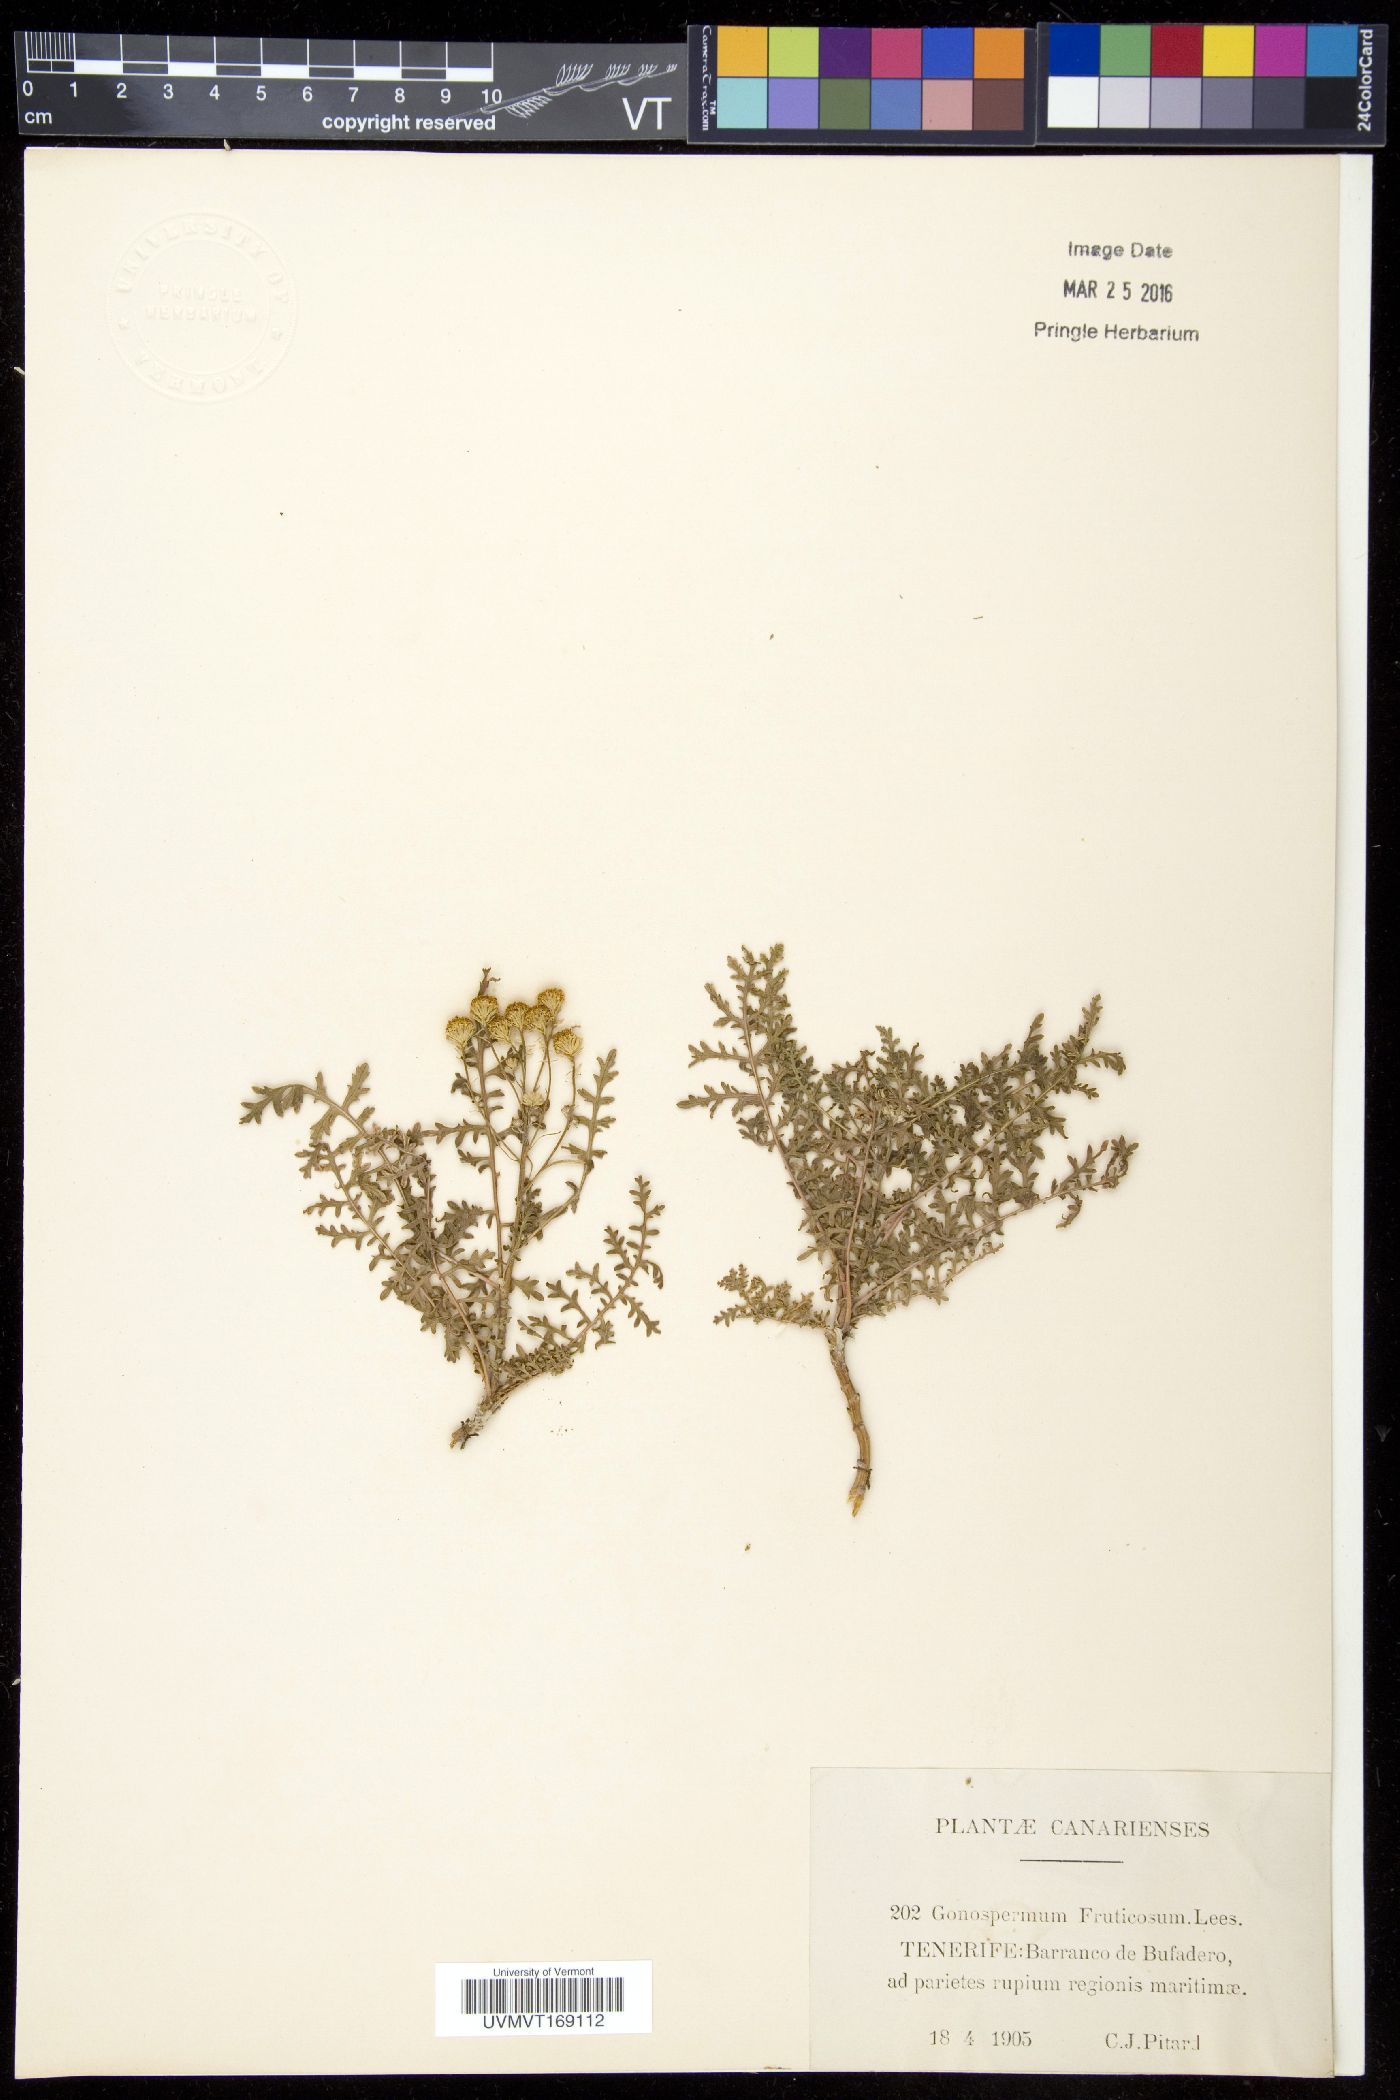 Gonospermum image